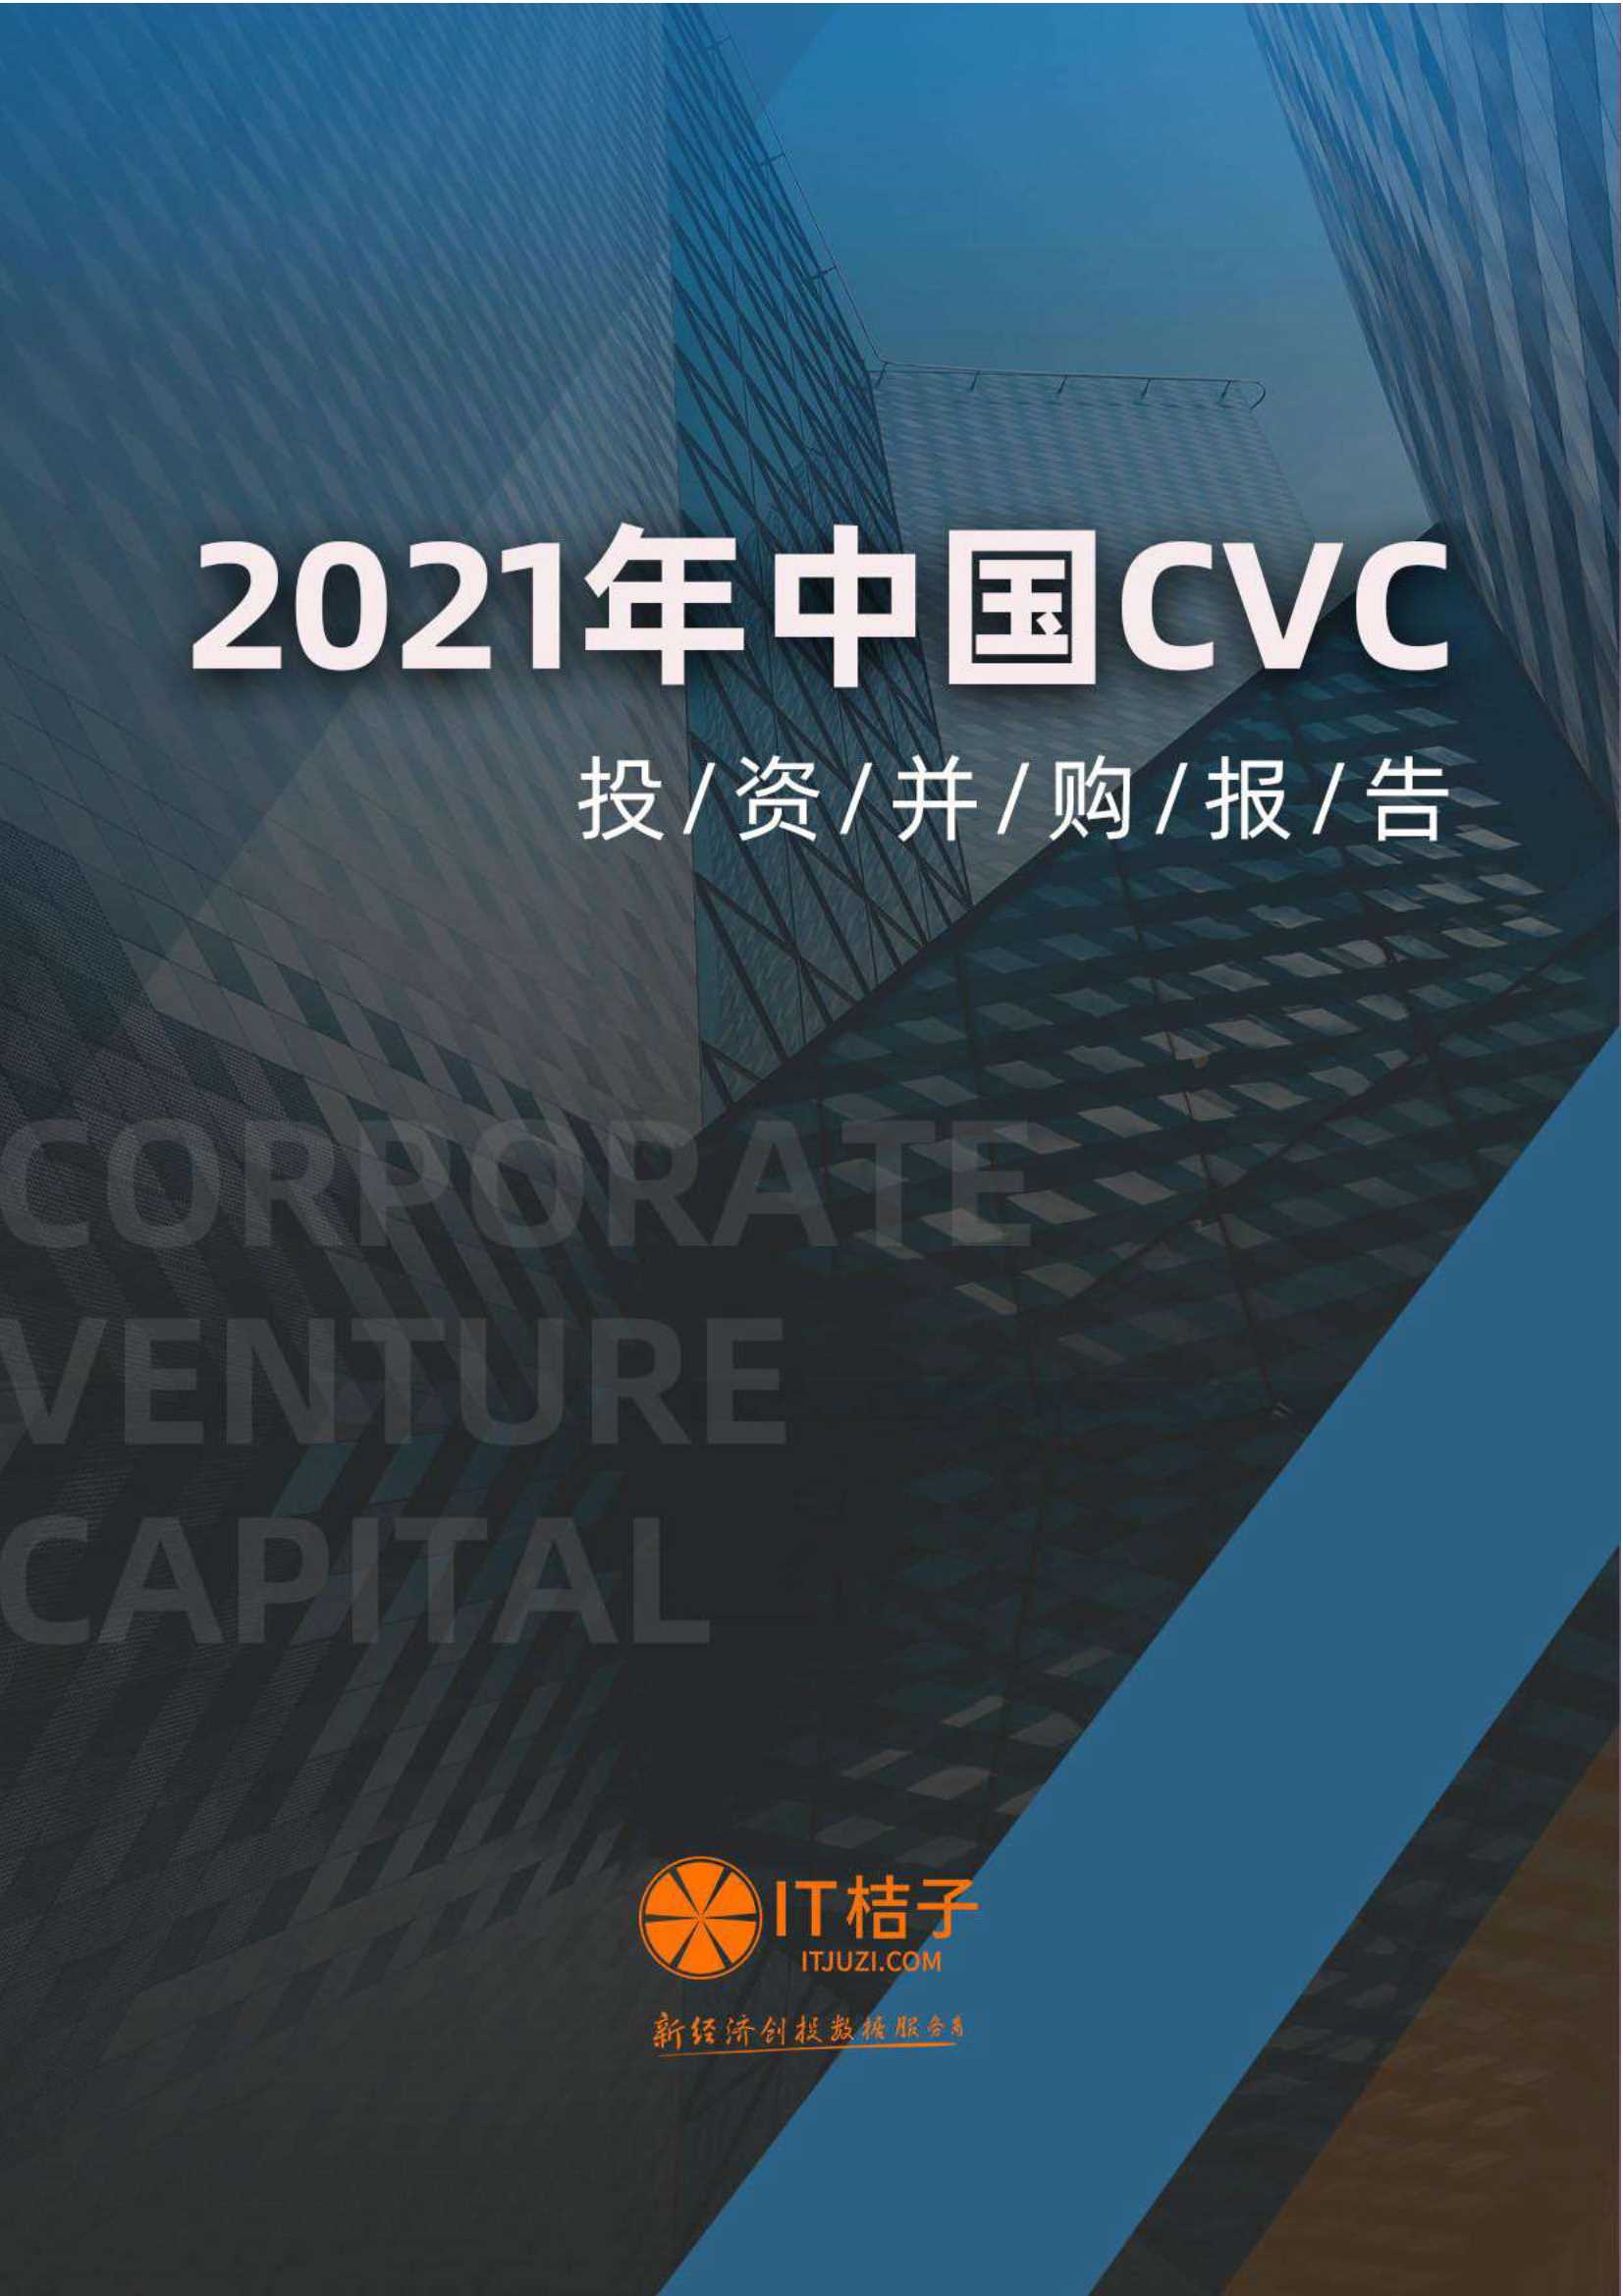 IT桔子-2021年中国CVC投资并购报告-2021.11-83页